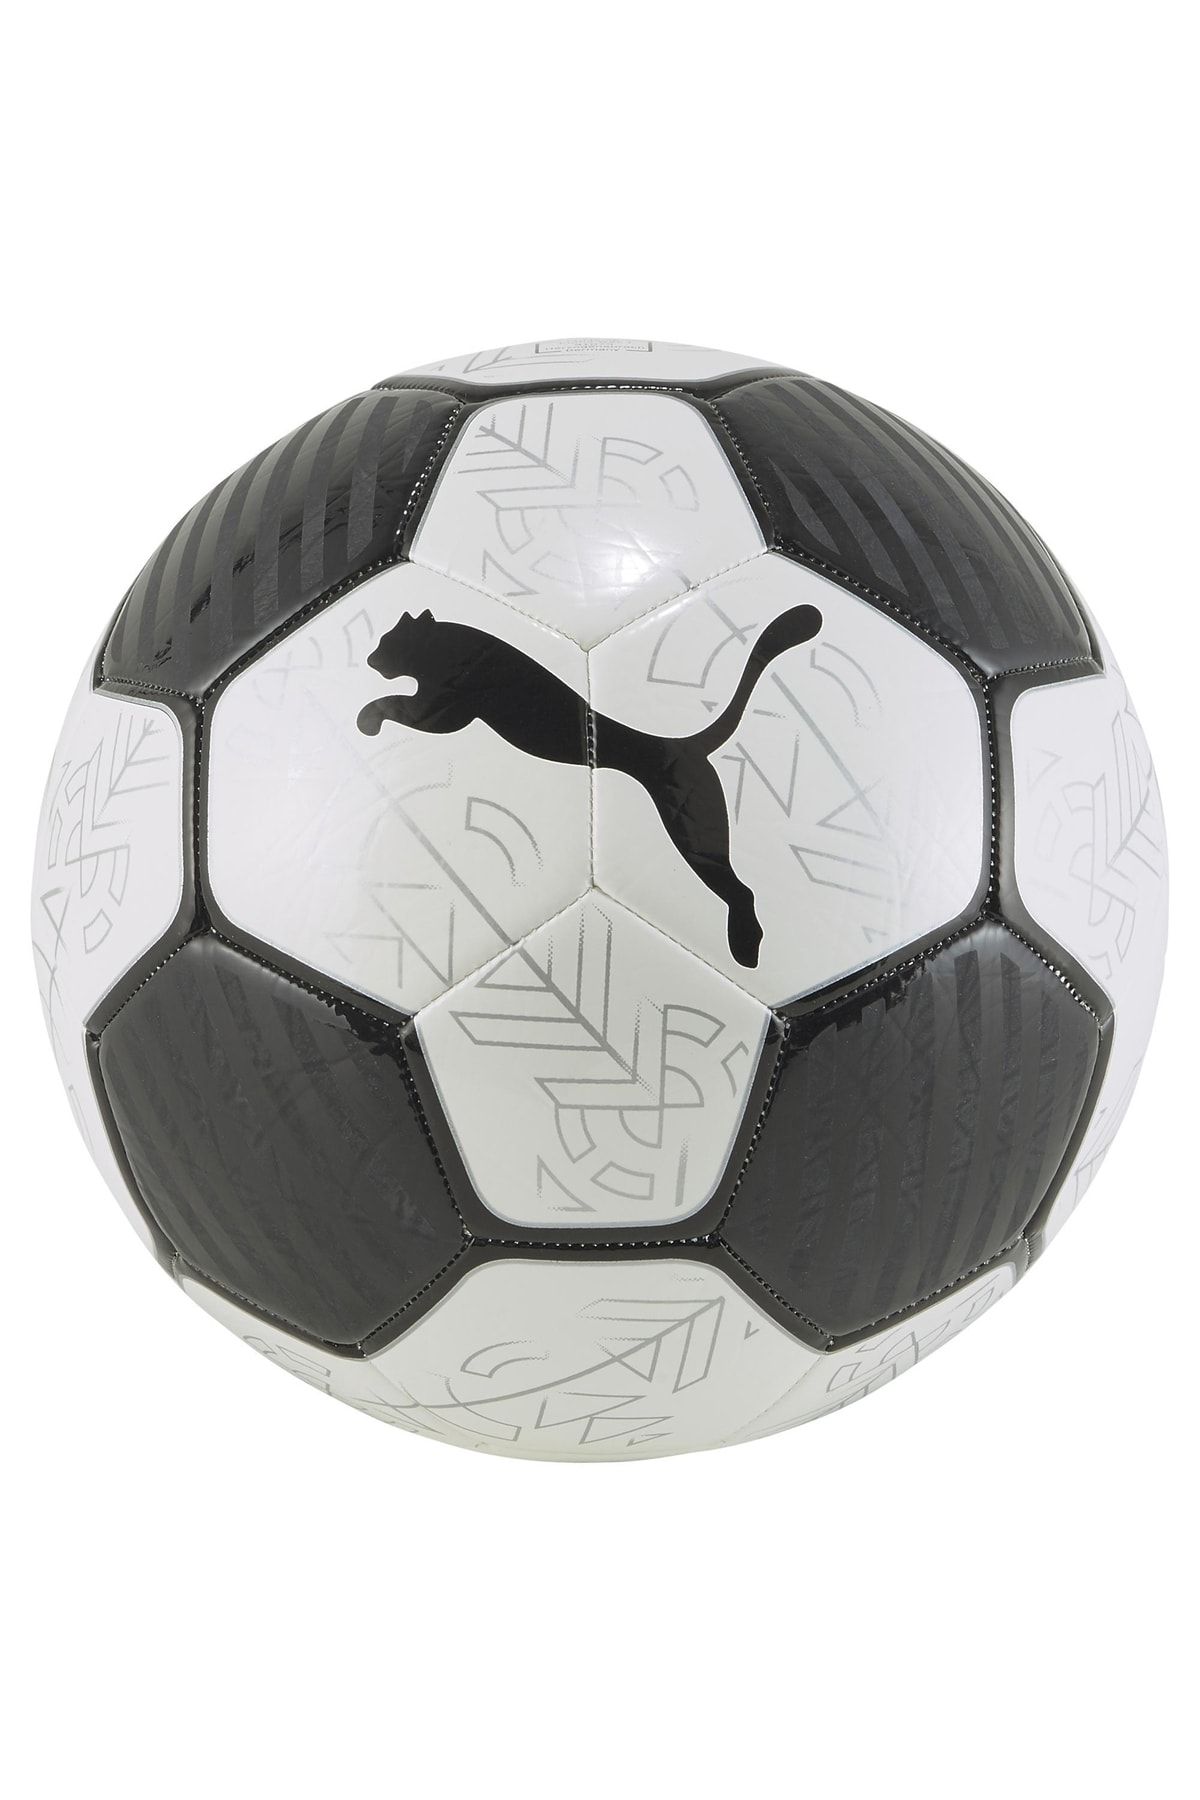 Puma 08399201 Prestige Ball Unisex Futbol Topu